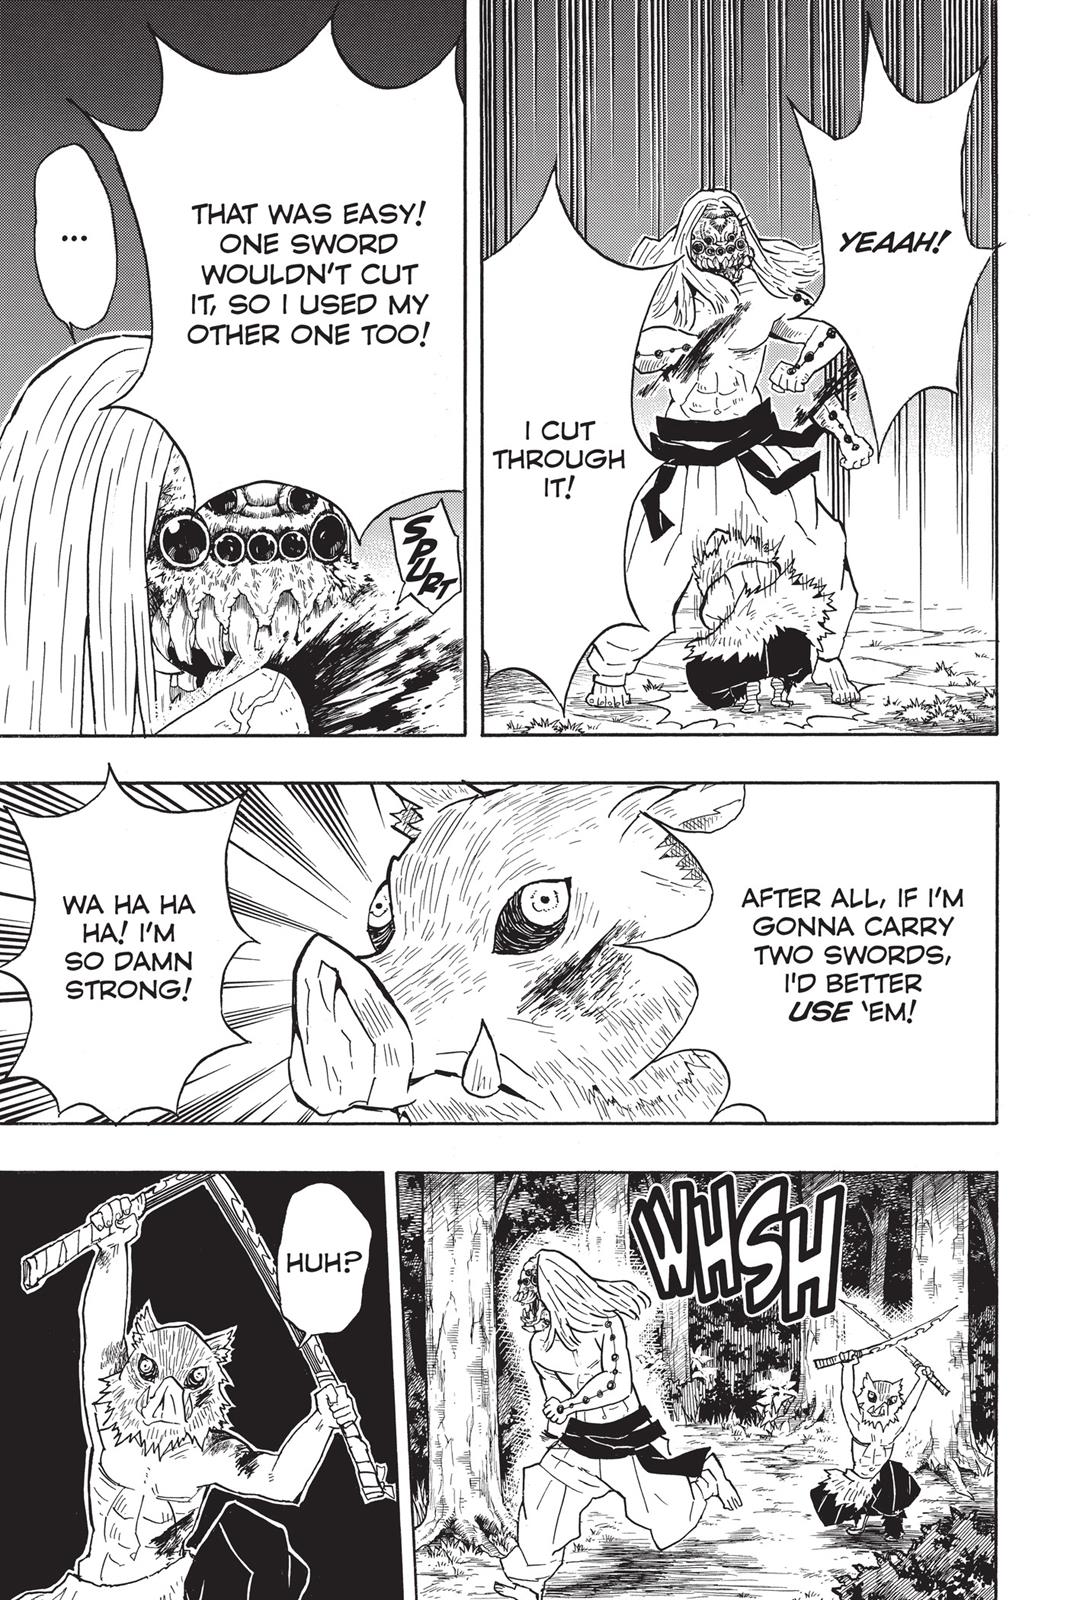 Demon Slayer Manga Manga Chapter - 36 - image 7